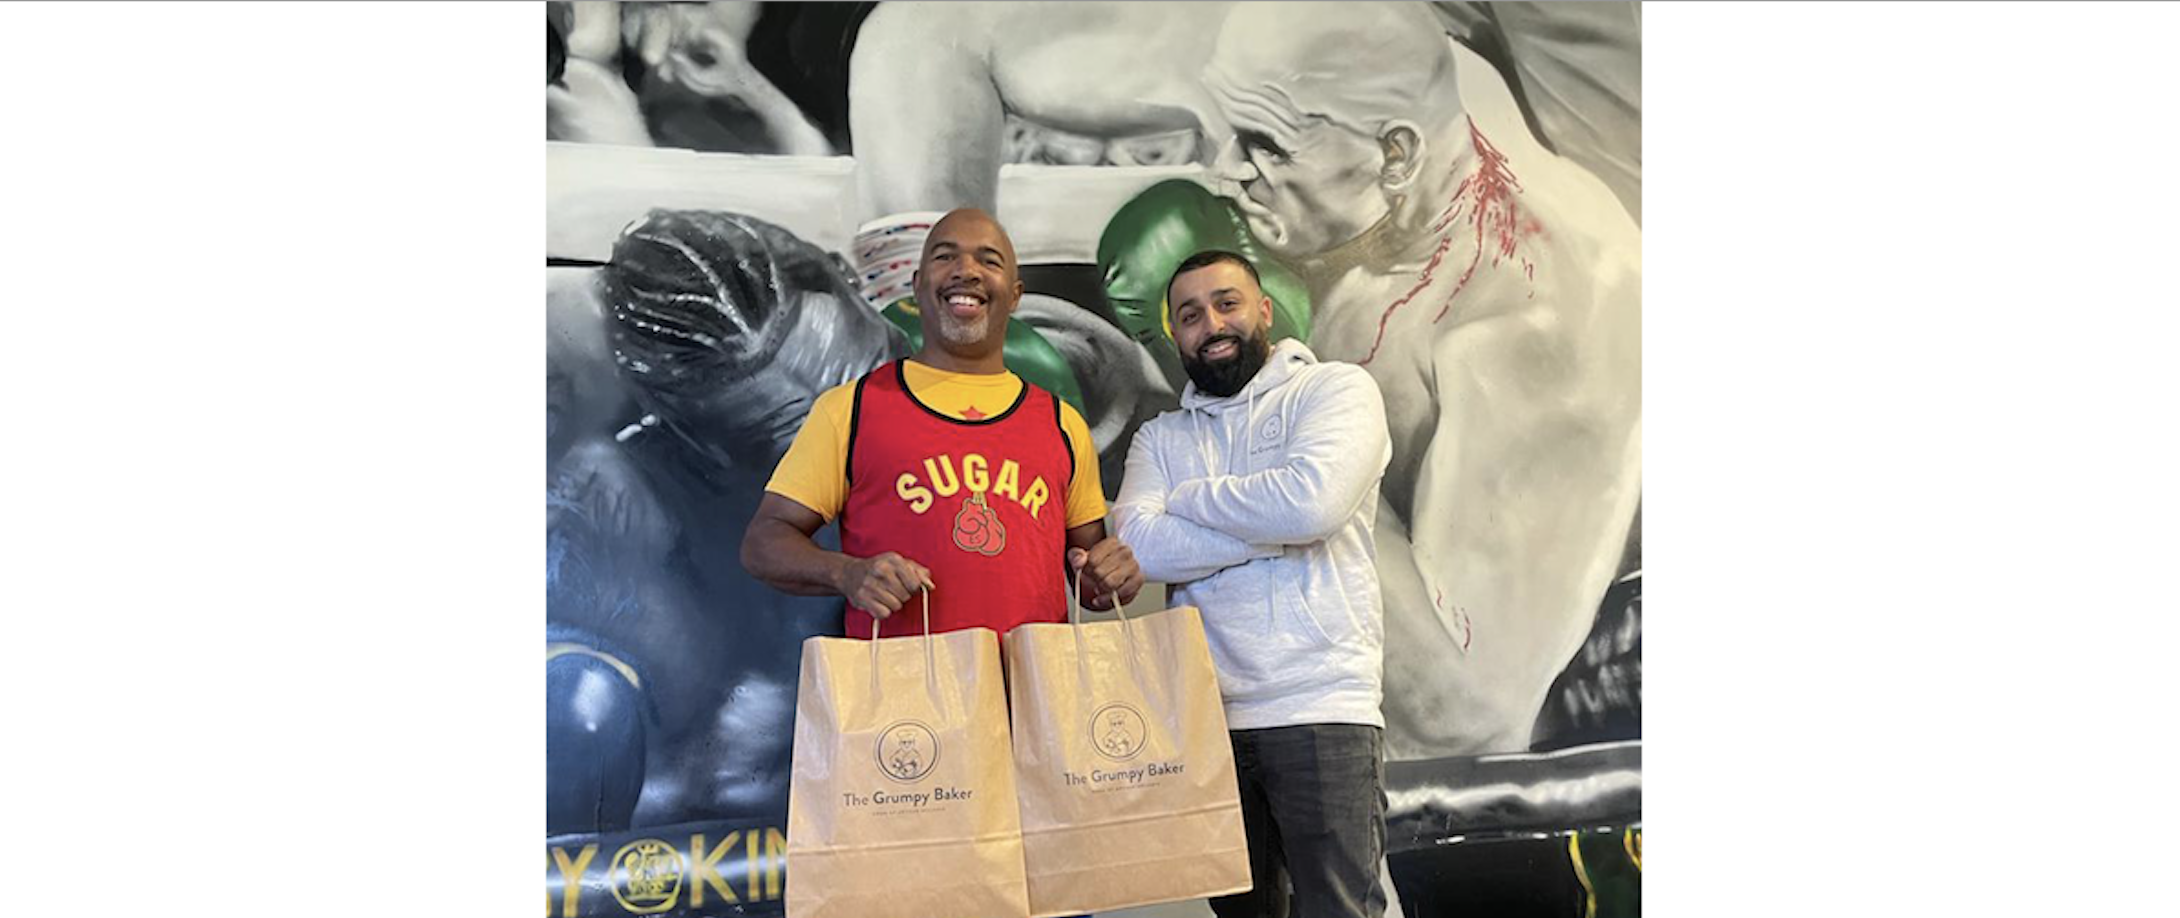 World renowned boxing coach Sugar 'Kronk' Hill visits The Grumpy Baker Hamza Afzal